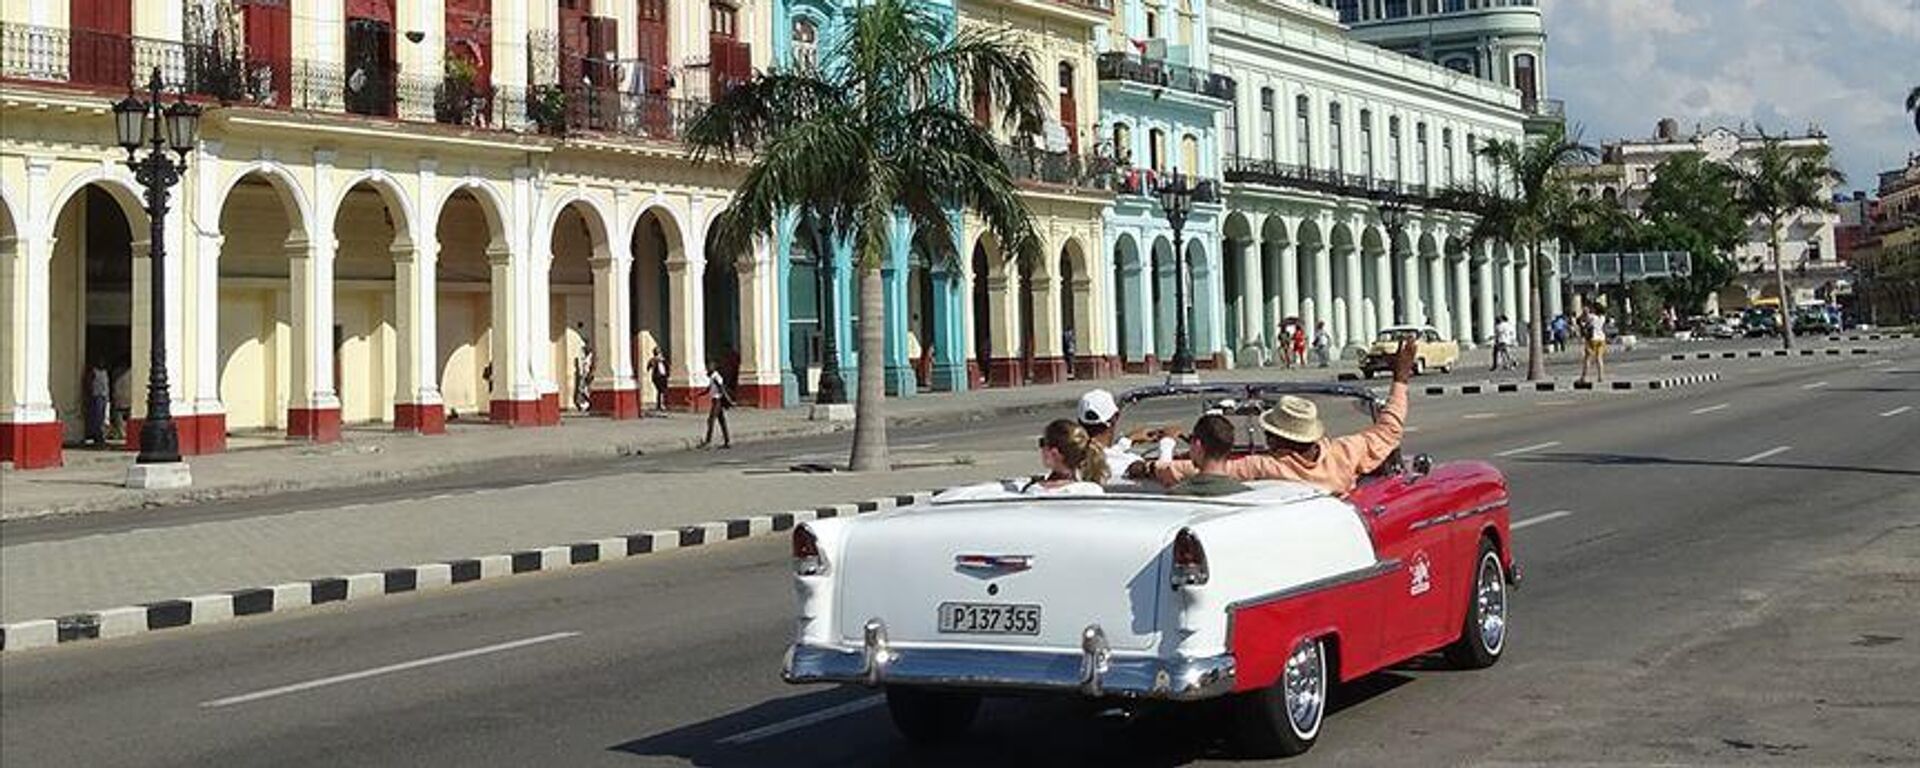 Küba ekonomisi için hayati önemdeki turizm sektörü, pandemideki çöküşünün ardından toparlanmaya girdi. ABD'nin abluka ve ambargosu nedeniyle yeni araçların girmediği adadaki klasik otomobil nostaljisi, turistleri cezbetmeye yarıyor.  - Sputnik Türkiye, 1920, 11.04.2023